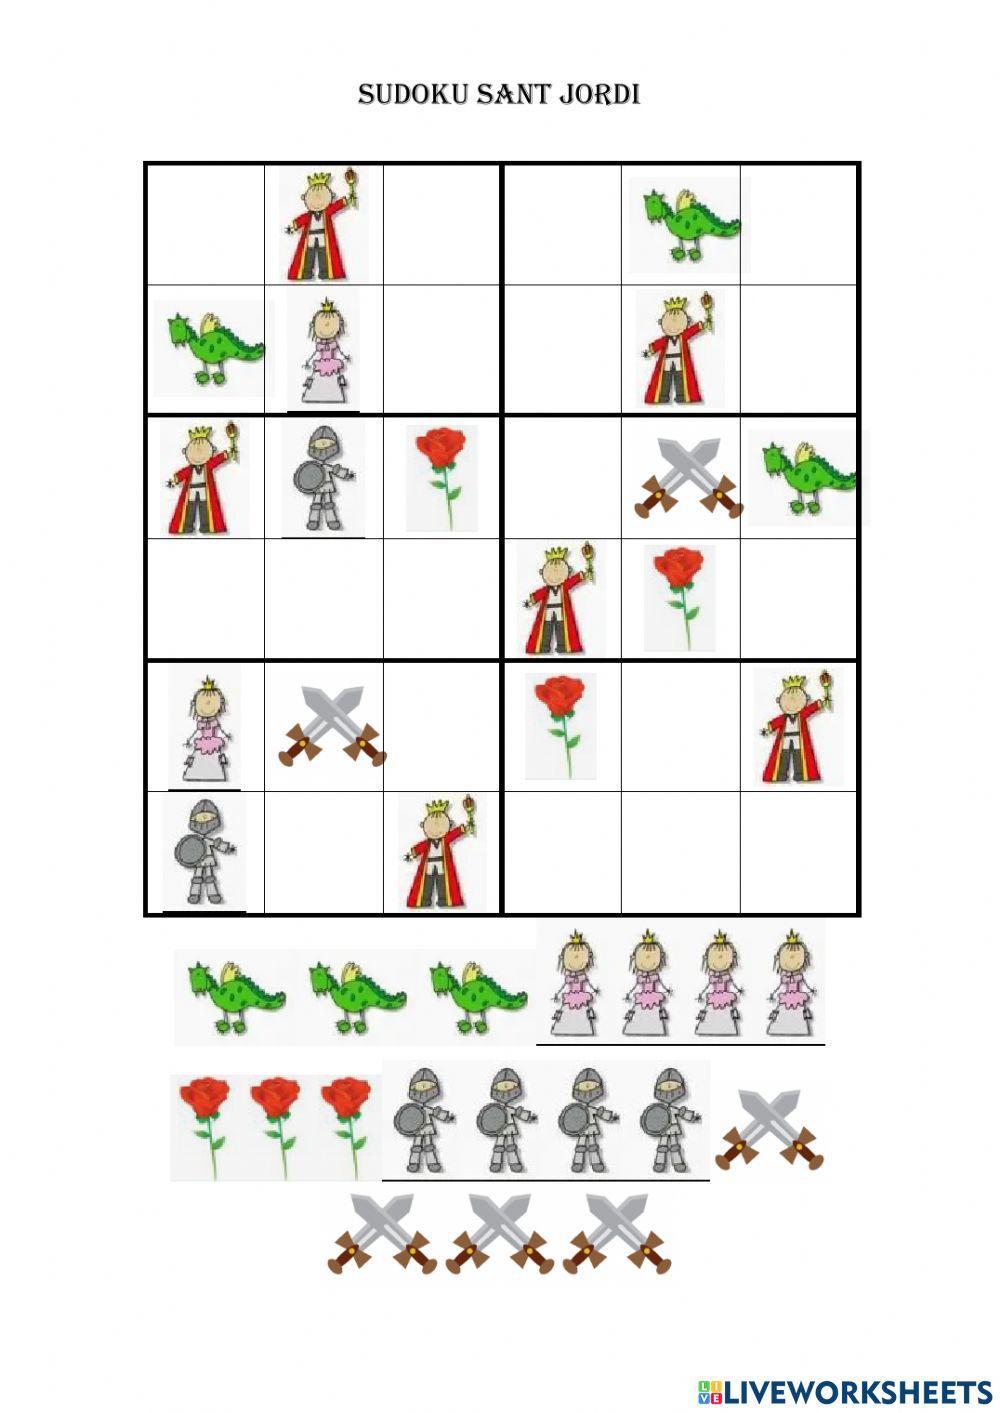 Sudoku Sant Jordi